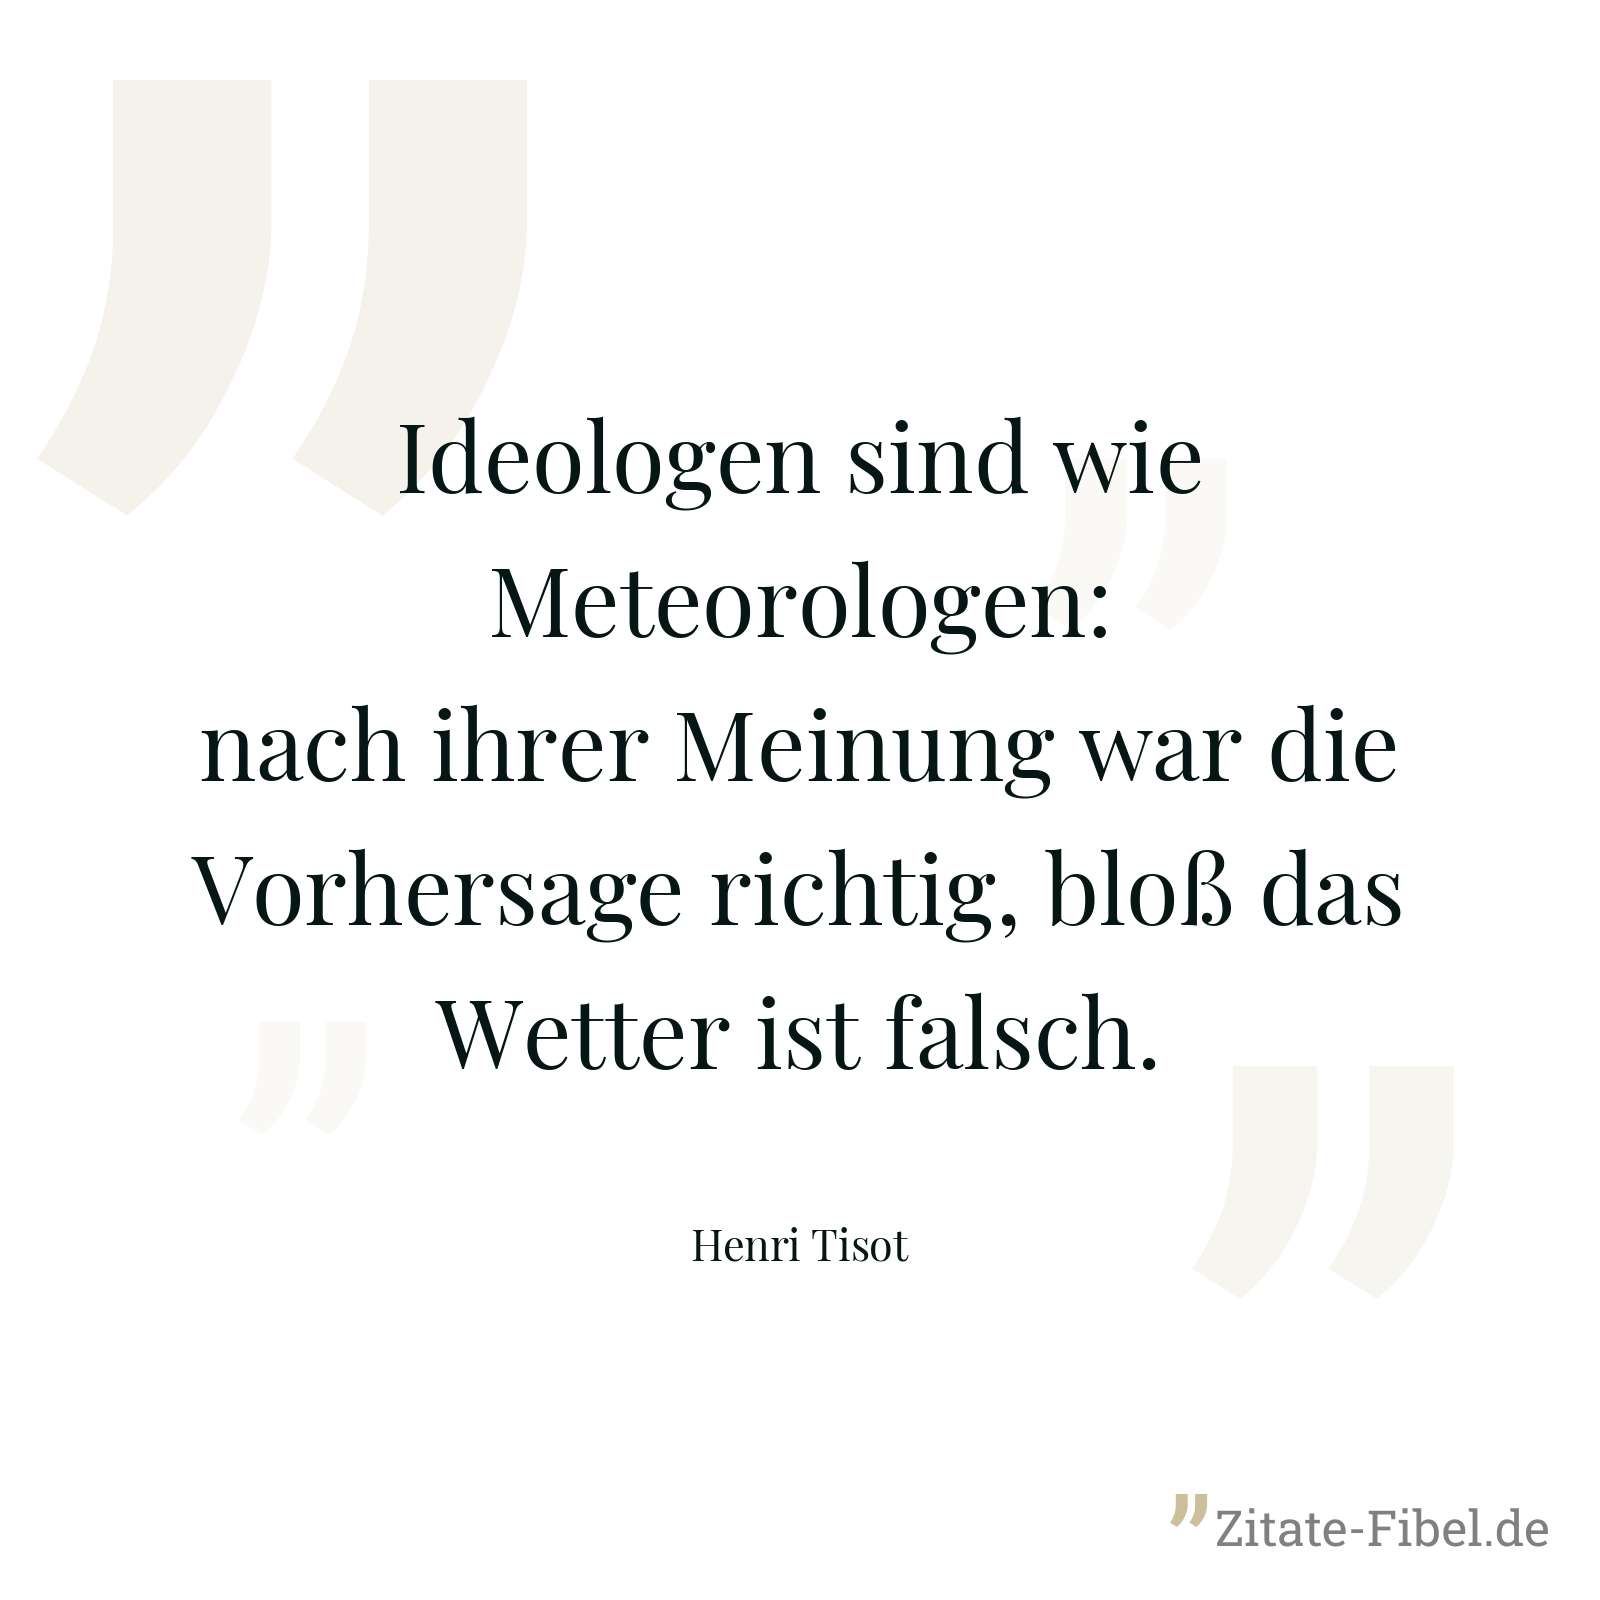 Ideologen sind wie Meteorologen: nach ihrer Meinung war die Vorhersage richtig, bloß das Wetter ist falsch. - Henri Tisot